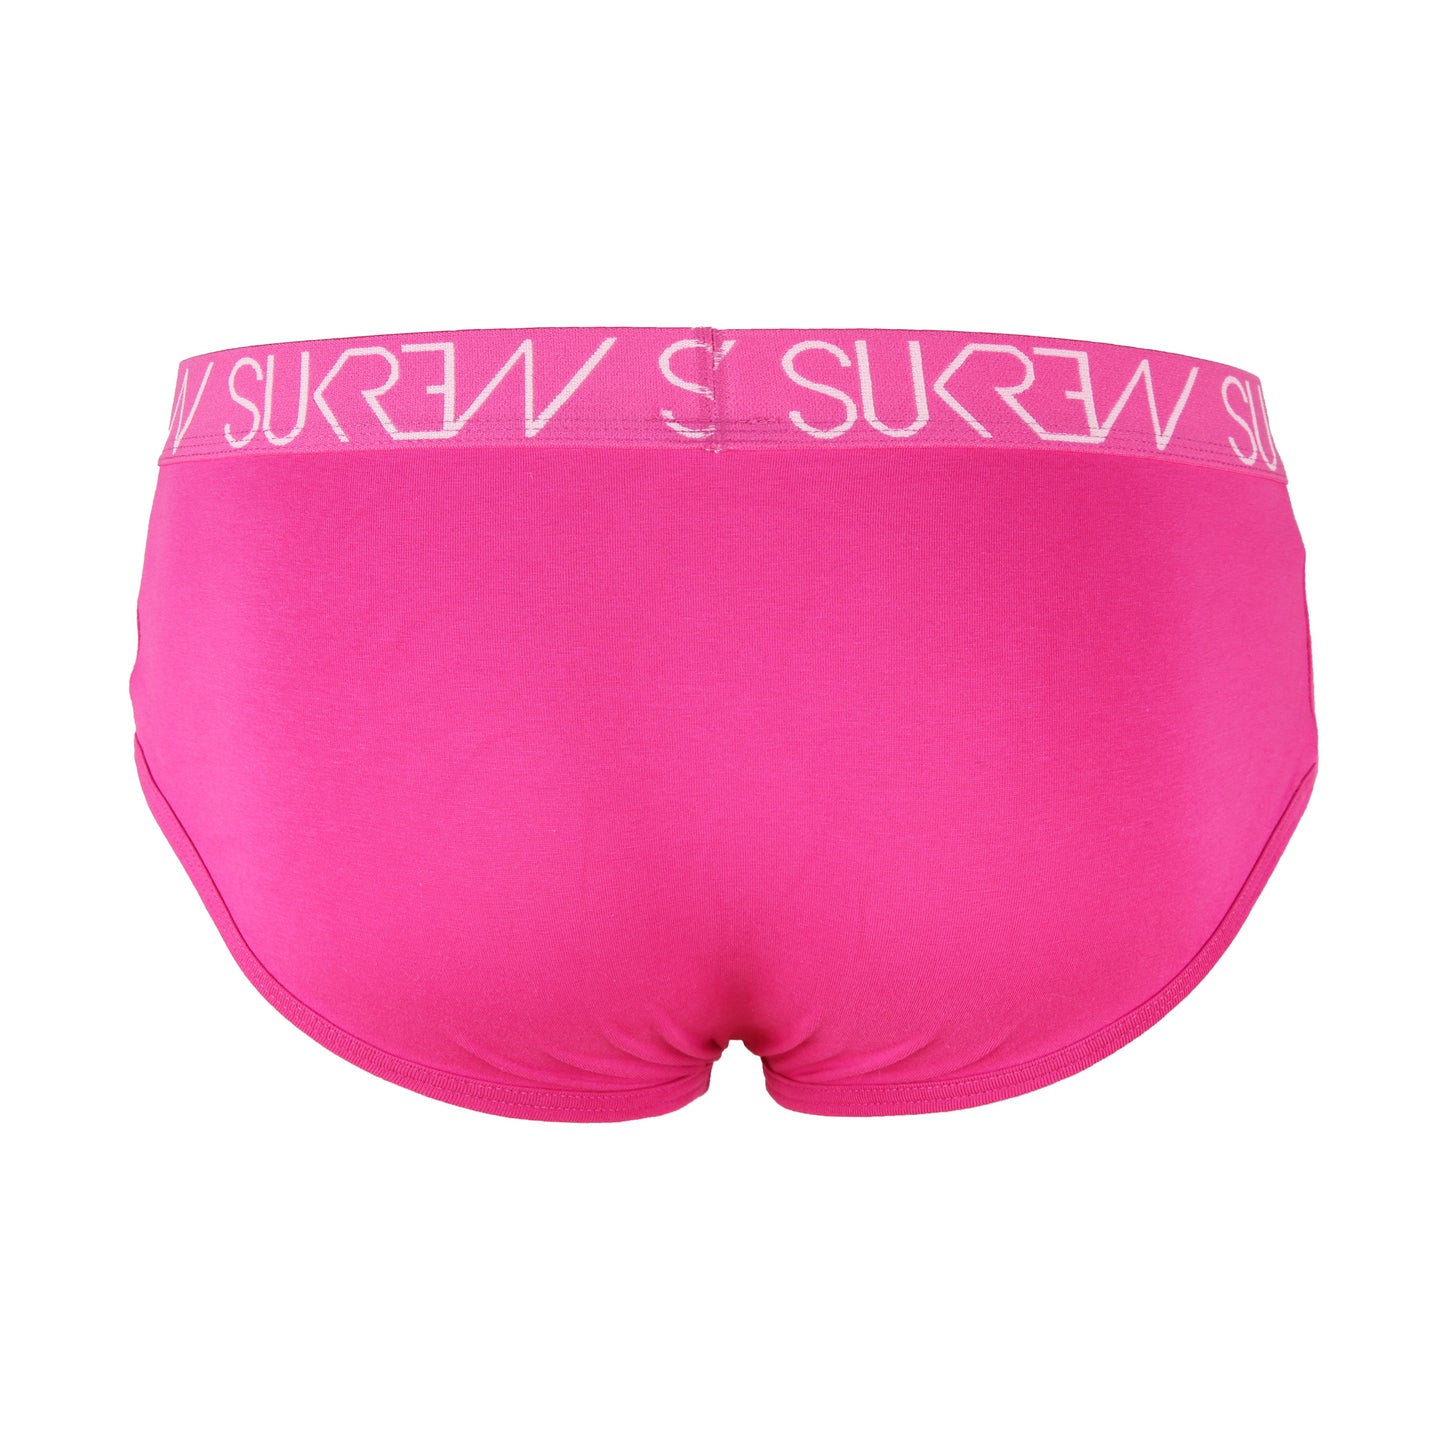 Sukrew - Apex Brief - Tropical Pink - Medium